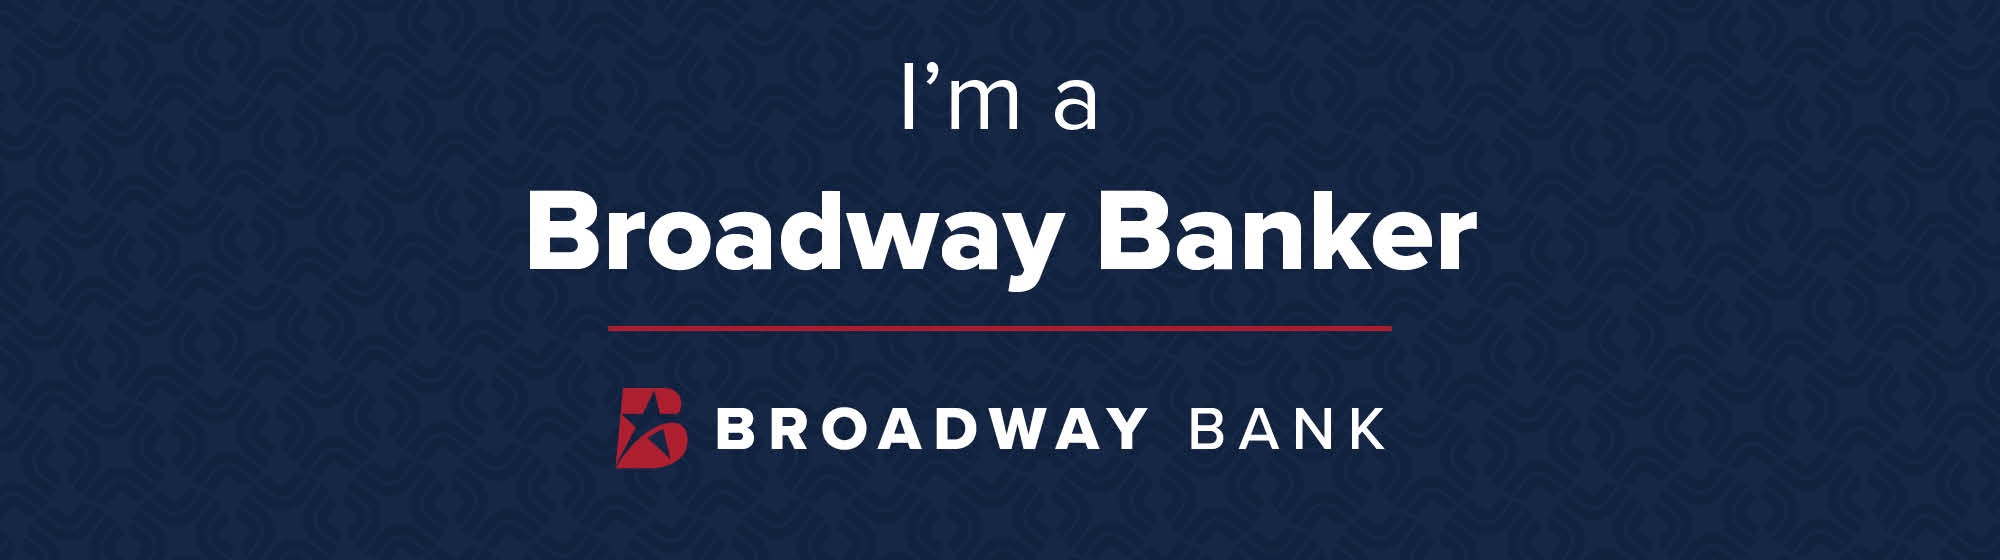 I’m a Broadway Banker: Gavin Gilshenan